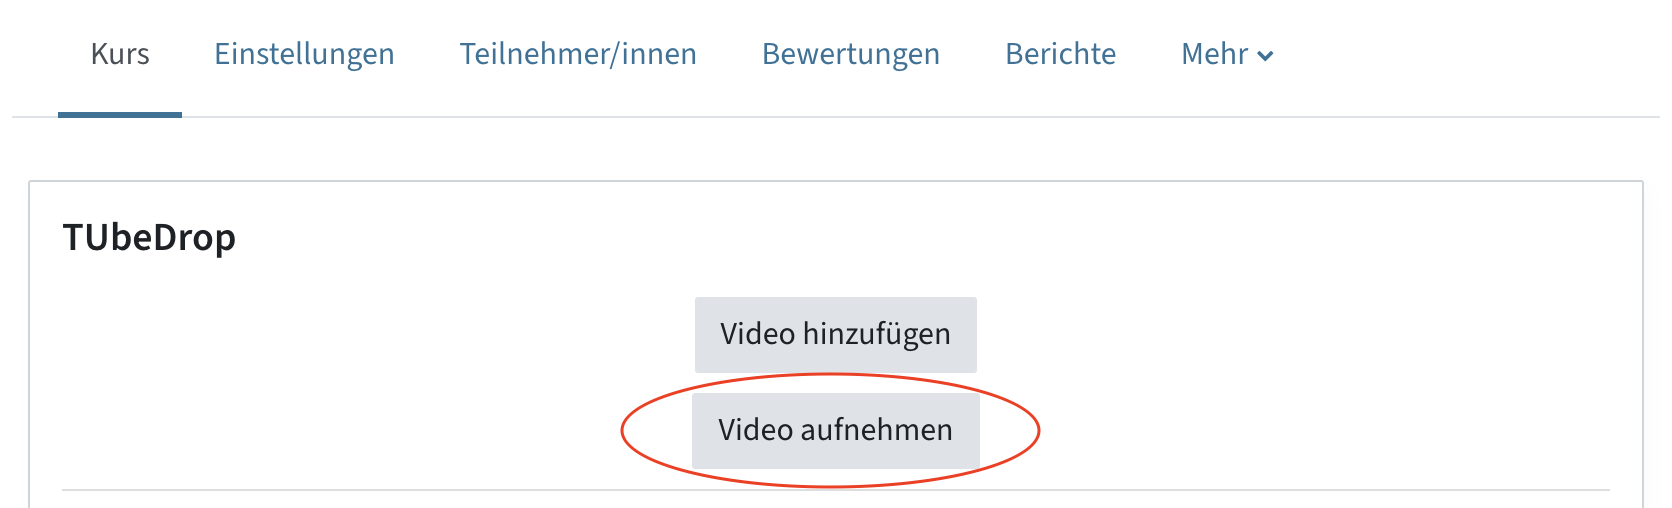 TUbeDrop-Block mit den Buttons "Video hinzufügen" und "Video aufnehmen"